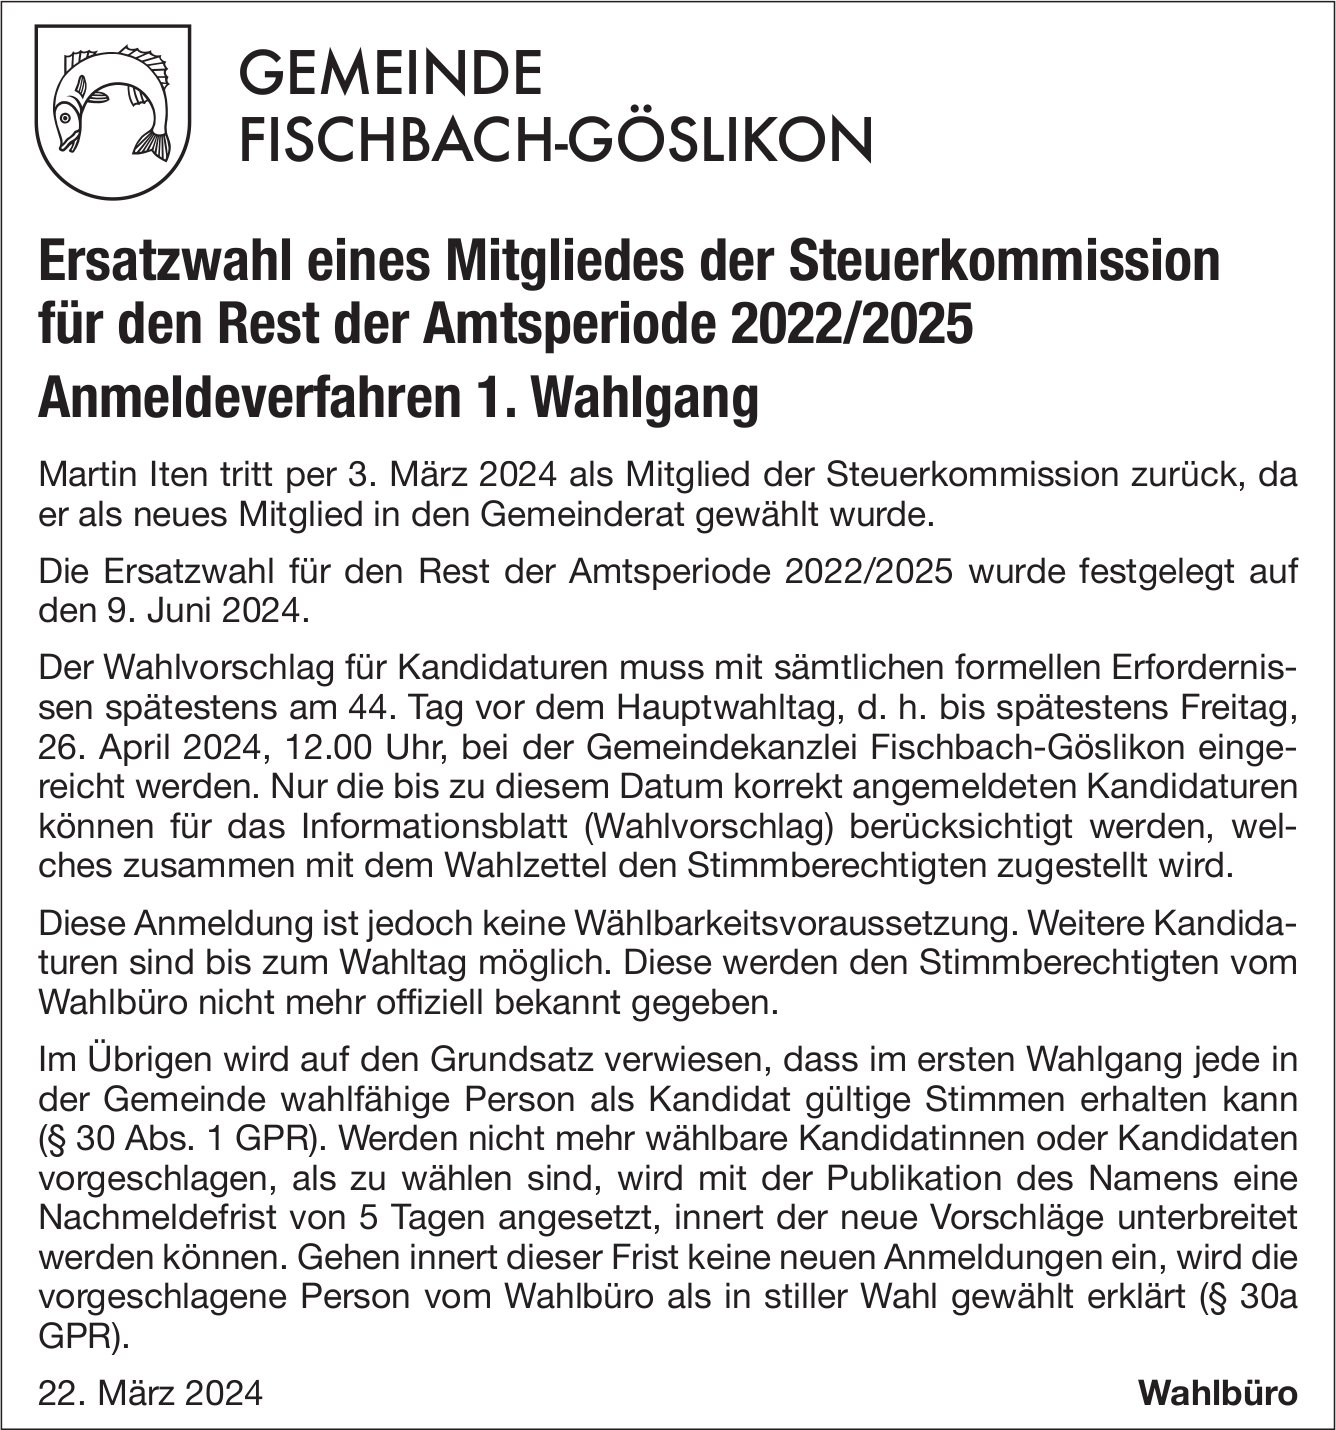 Fischbach-Göslikon - Ersatzwahl eines Mitgliedes der Steuerkommission